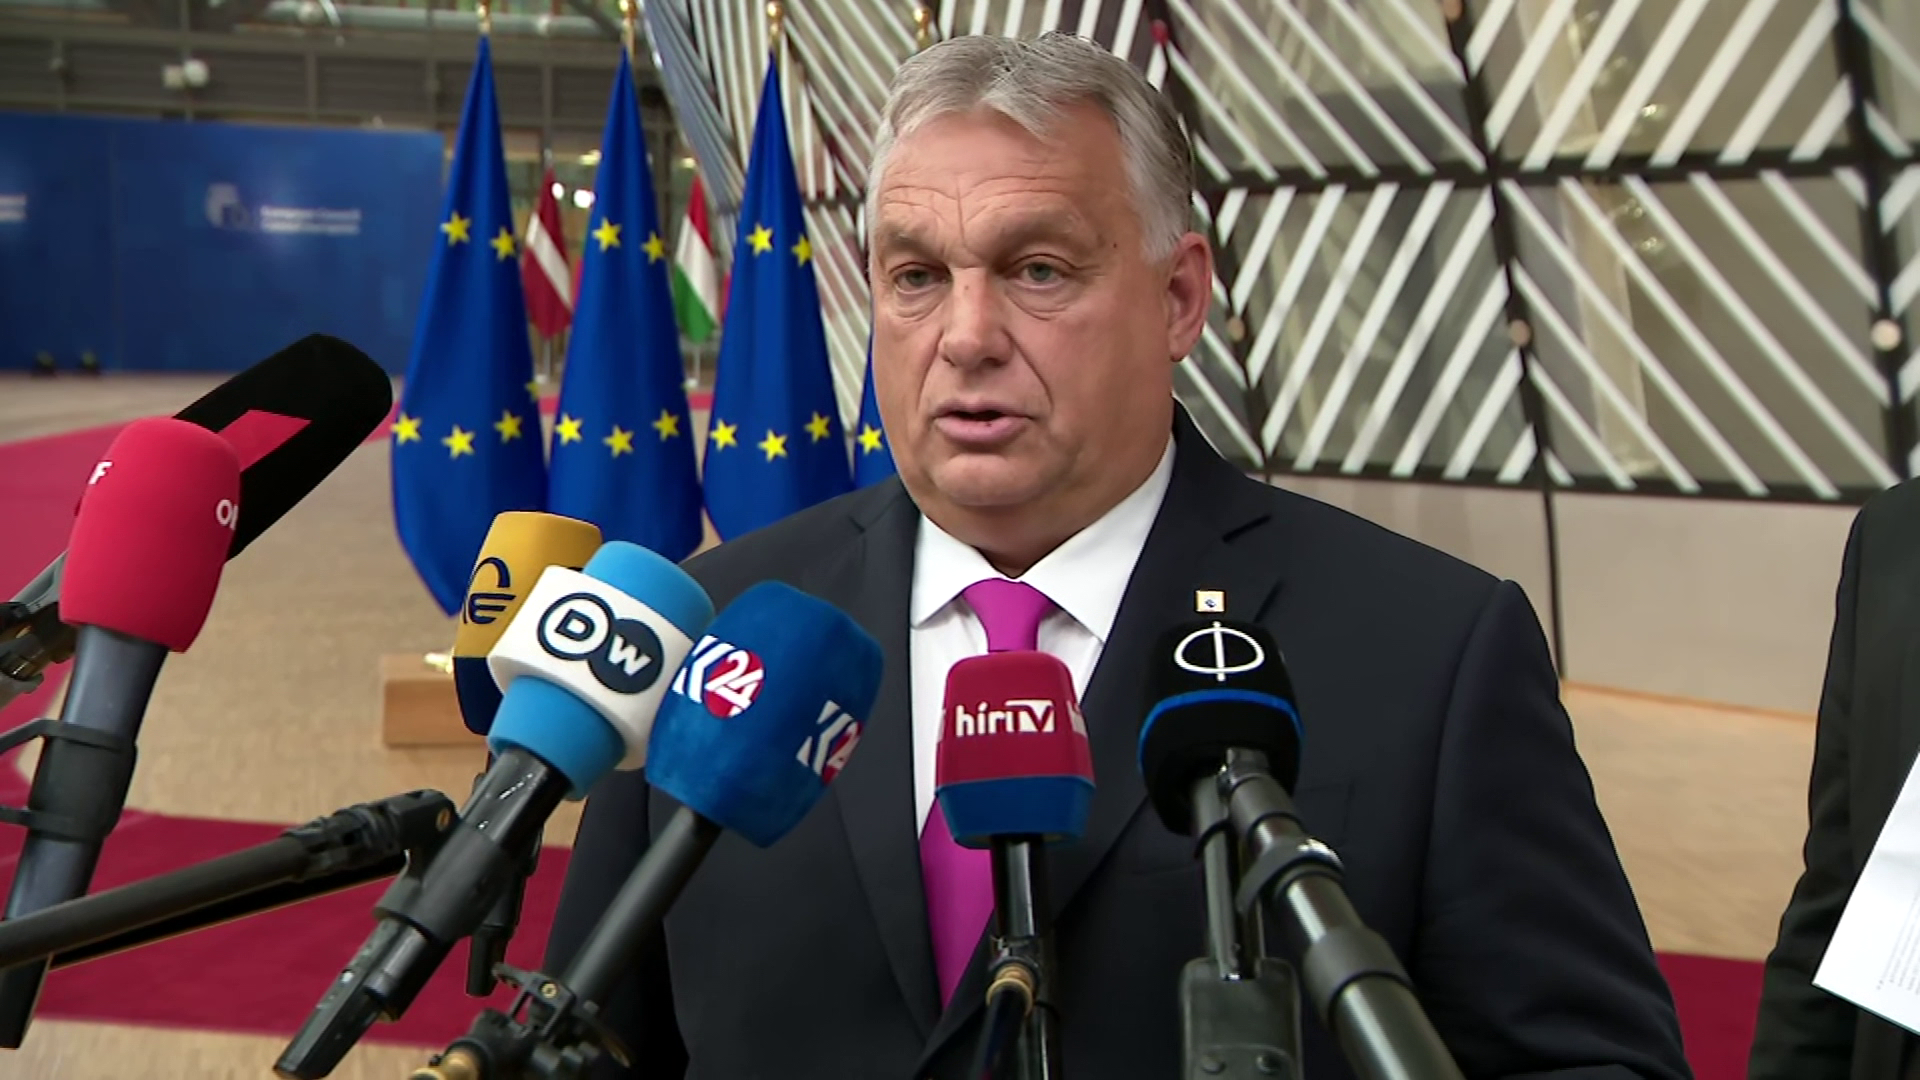 Özönlöttek az Orbán Viktort méltató hozzászólások 